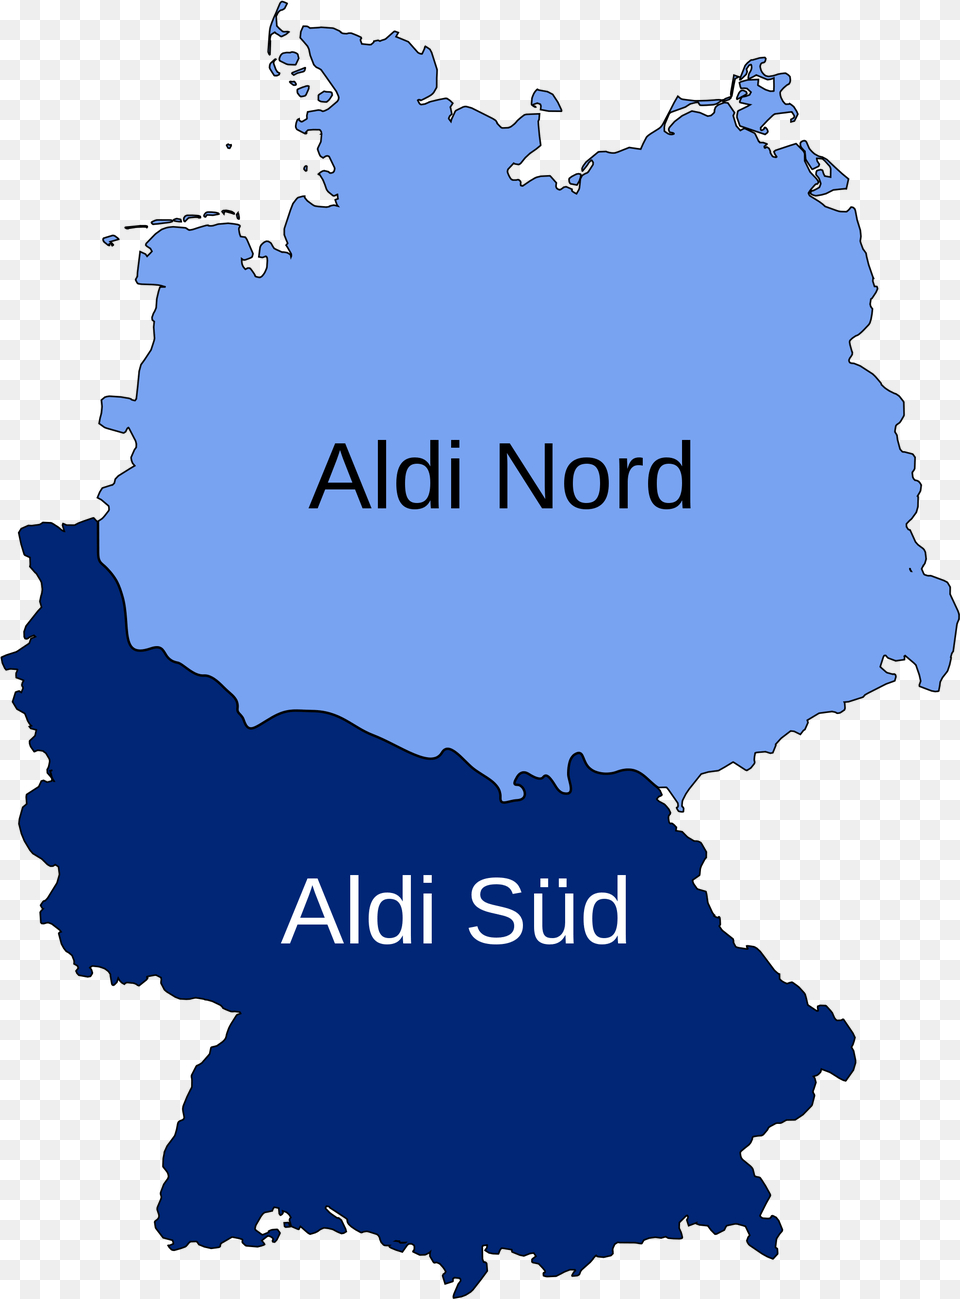 Aldi In Germany Aldi Sud And Aldi Nord, Plot, Chart, Nature, Land Png